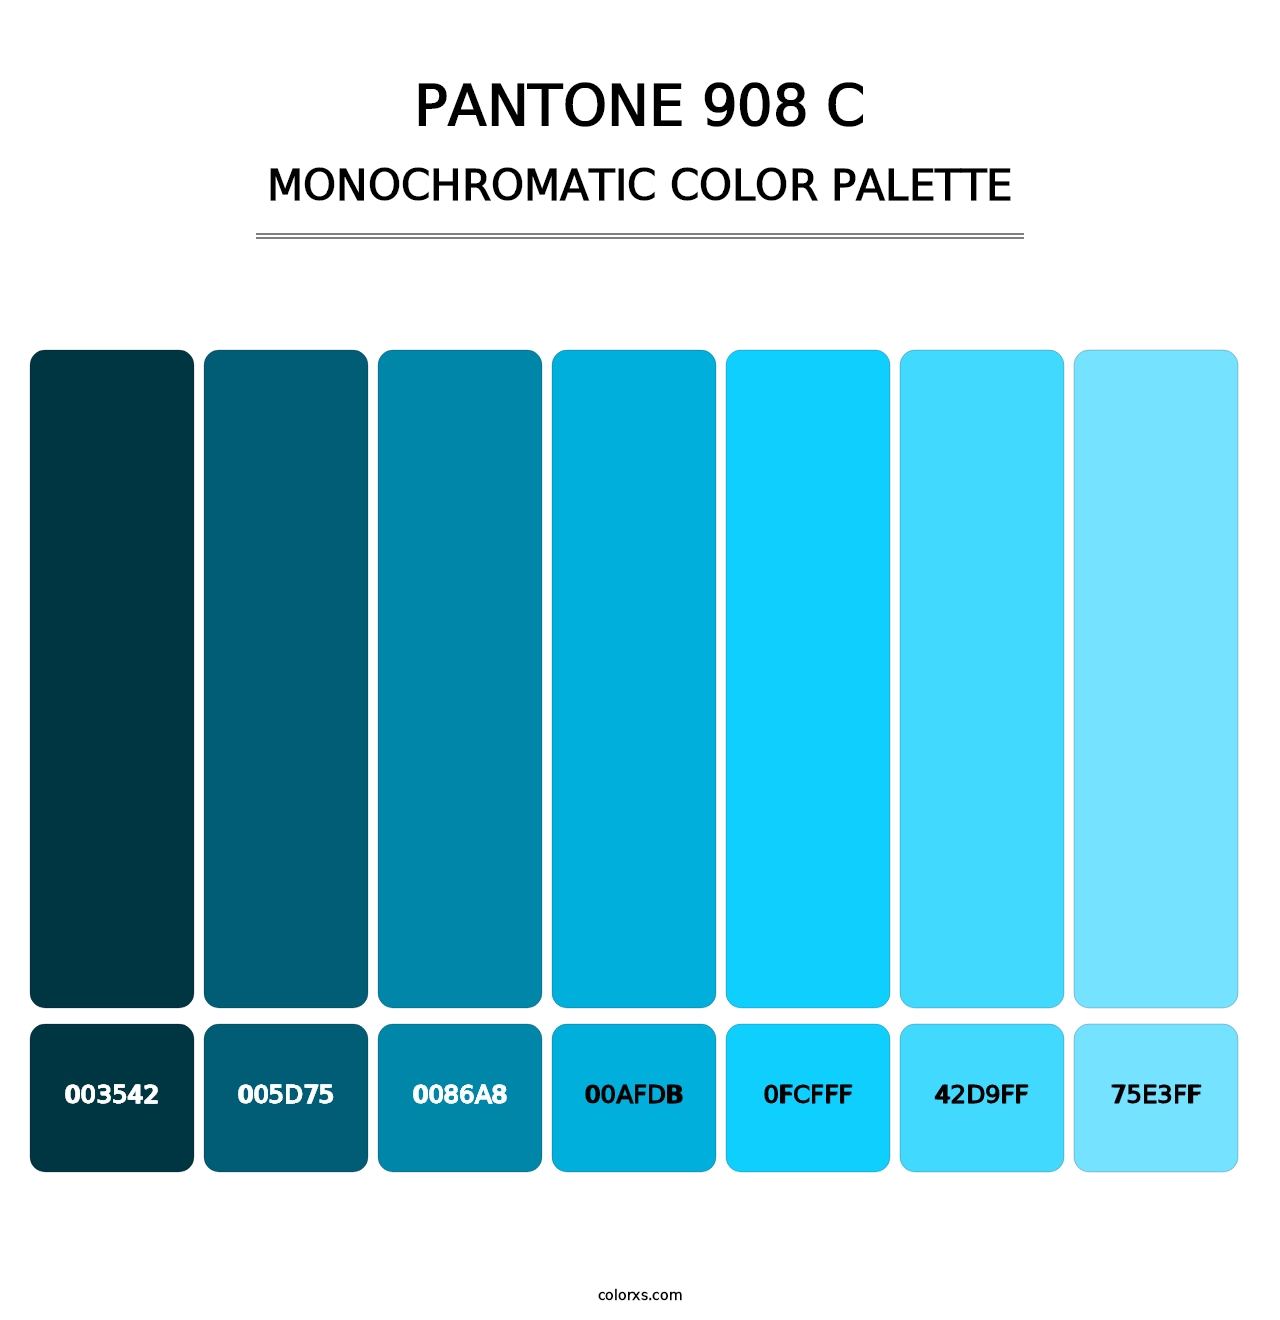 PANTONE 908 C - Monochromatic Color Palette